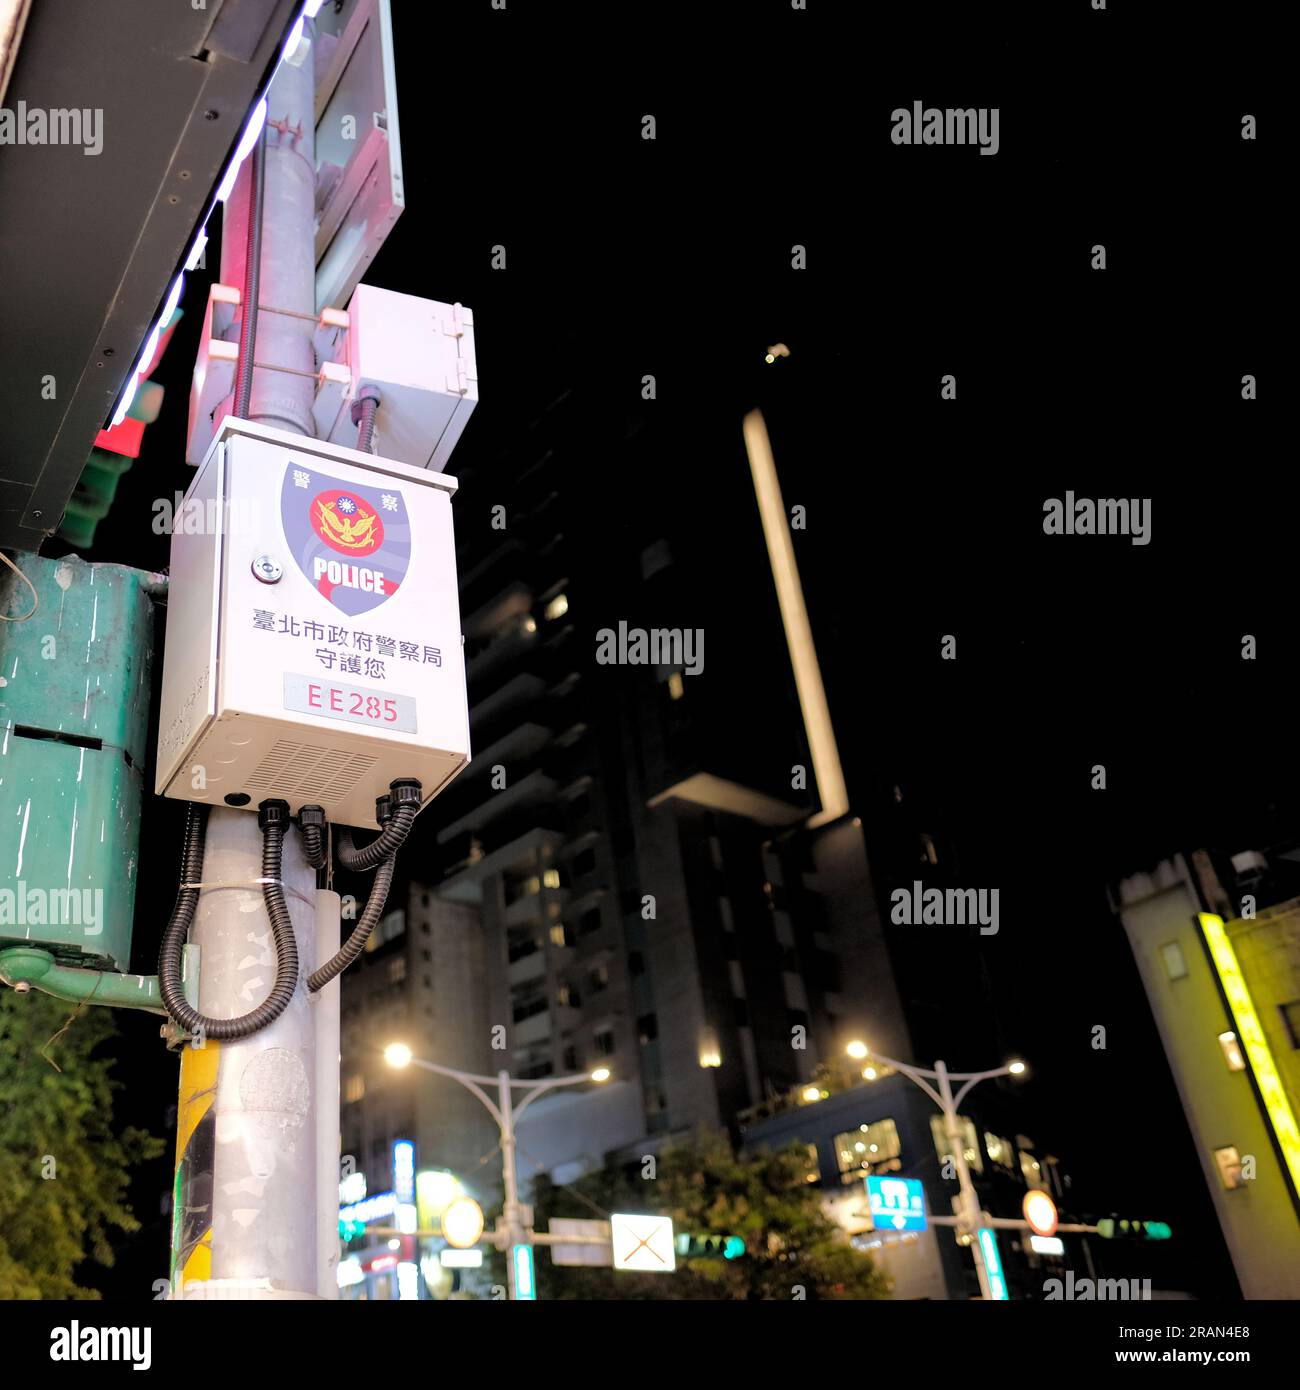 Telecamera di sorveglianza del dipartimento di polizia di Taipei montata su un palo per monitorare il traffico e le strade, garantendo sicurezza, sicurezza e vigilanza a Taiwan. Foto Stock